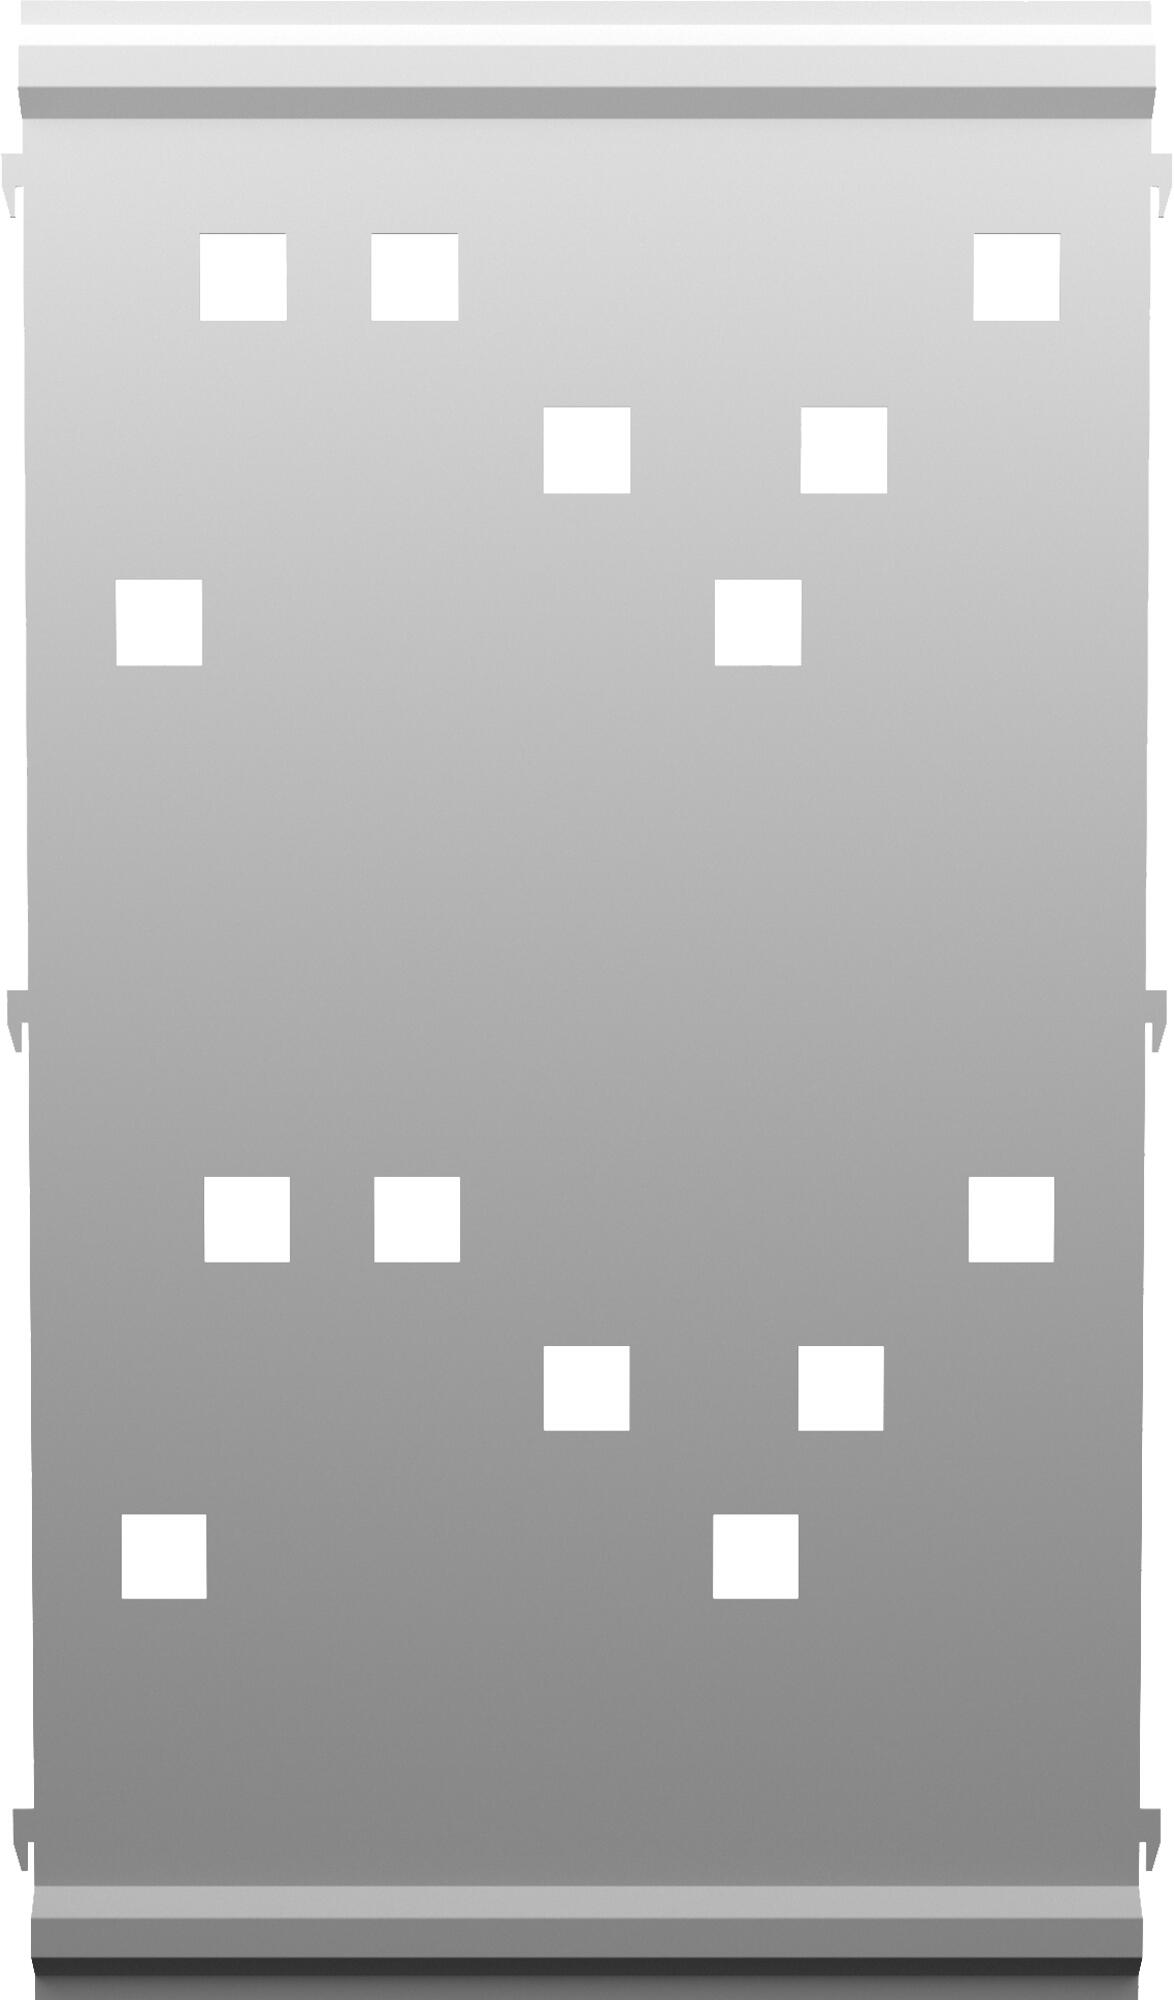 Panel remate valla acero galvanizado franja cuadros blanco 94x52,5 cm